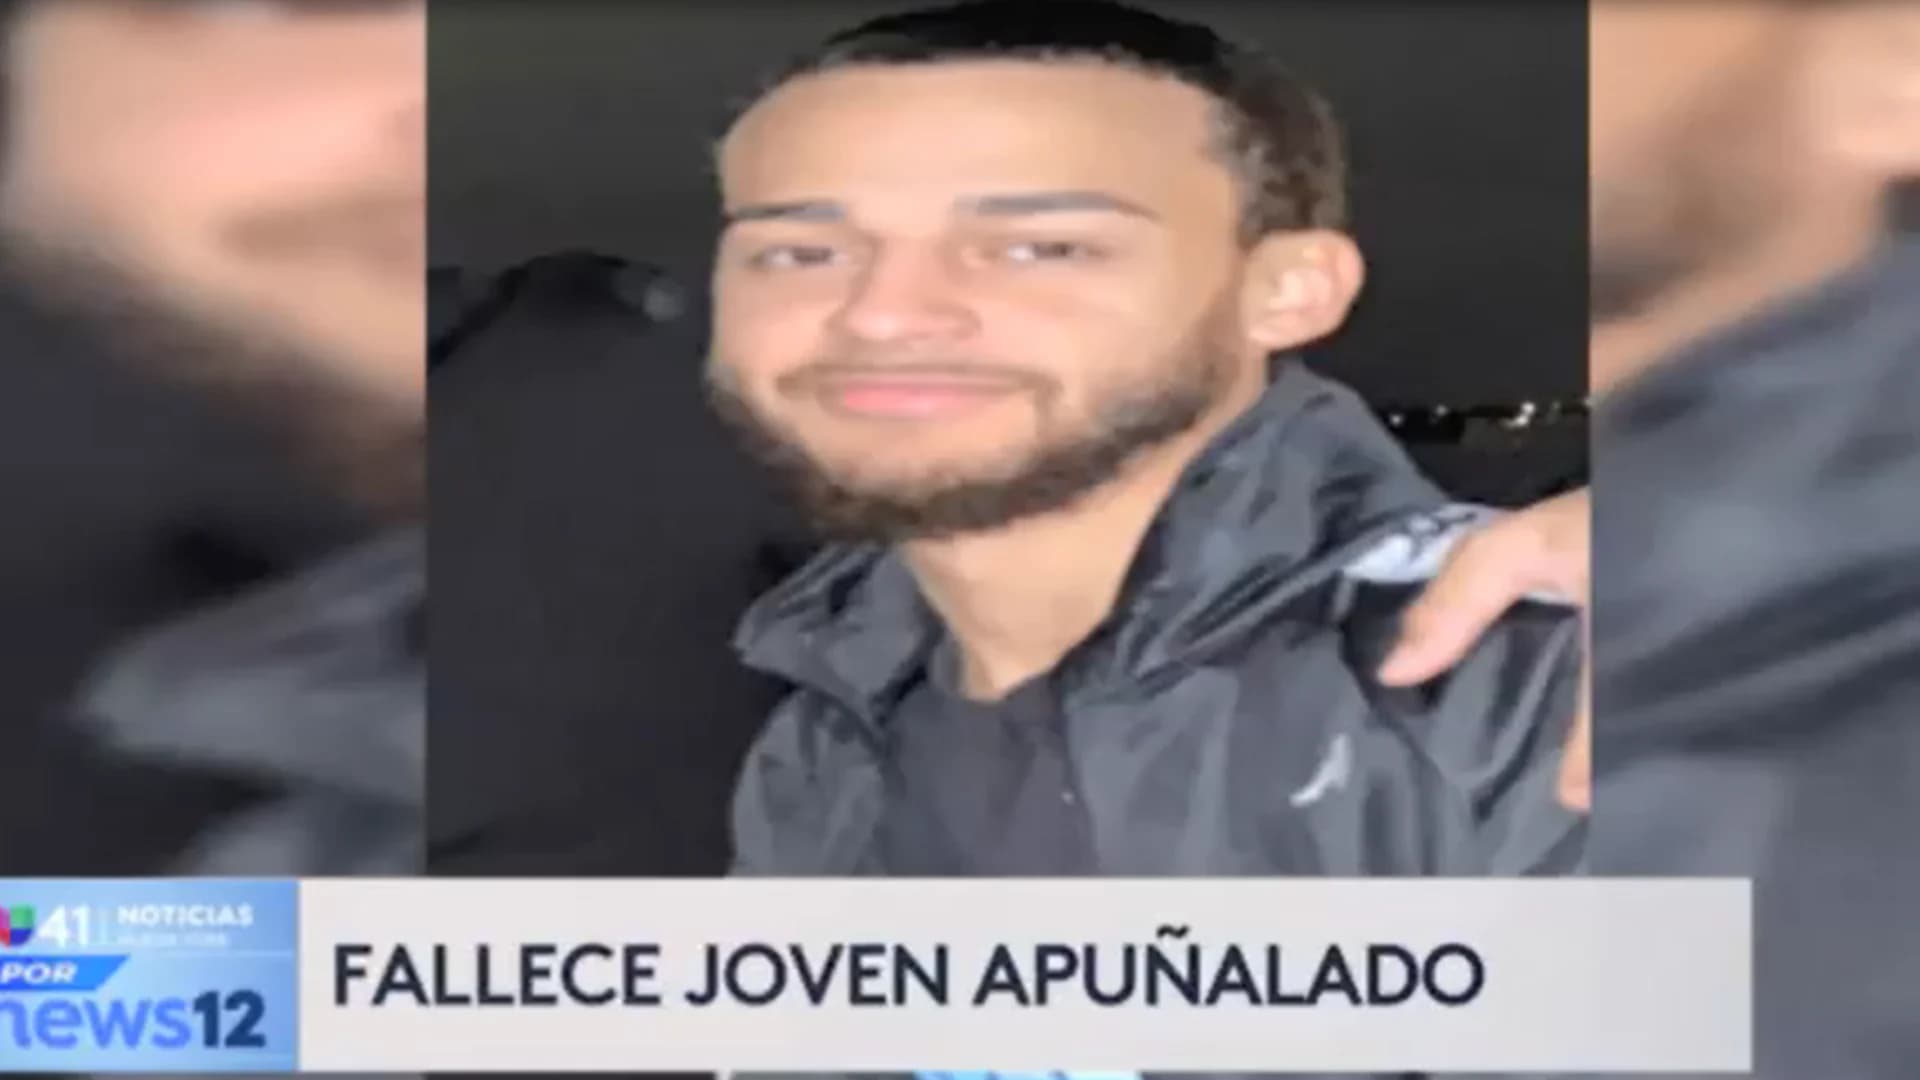 Univision 41 News Brief: Joven muere tras ser acuchillado en El Bronx